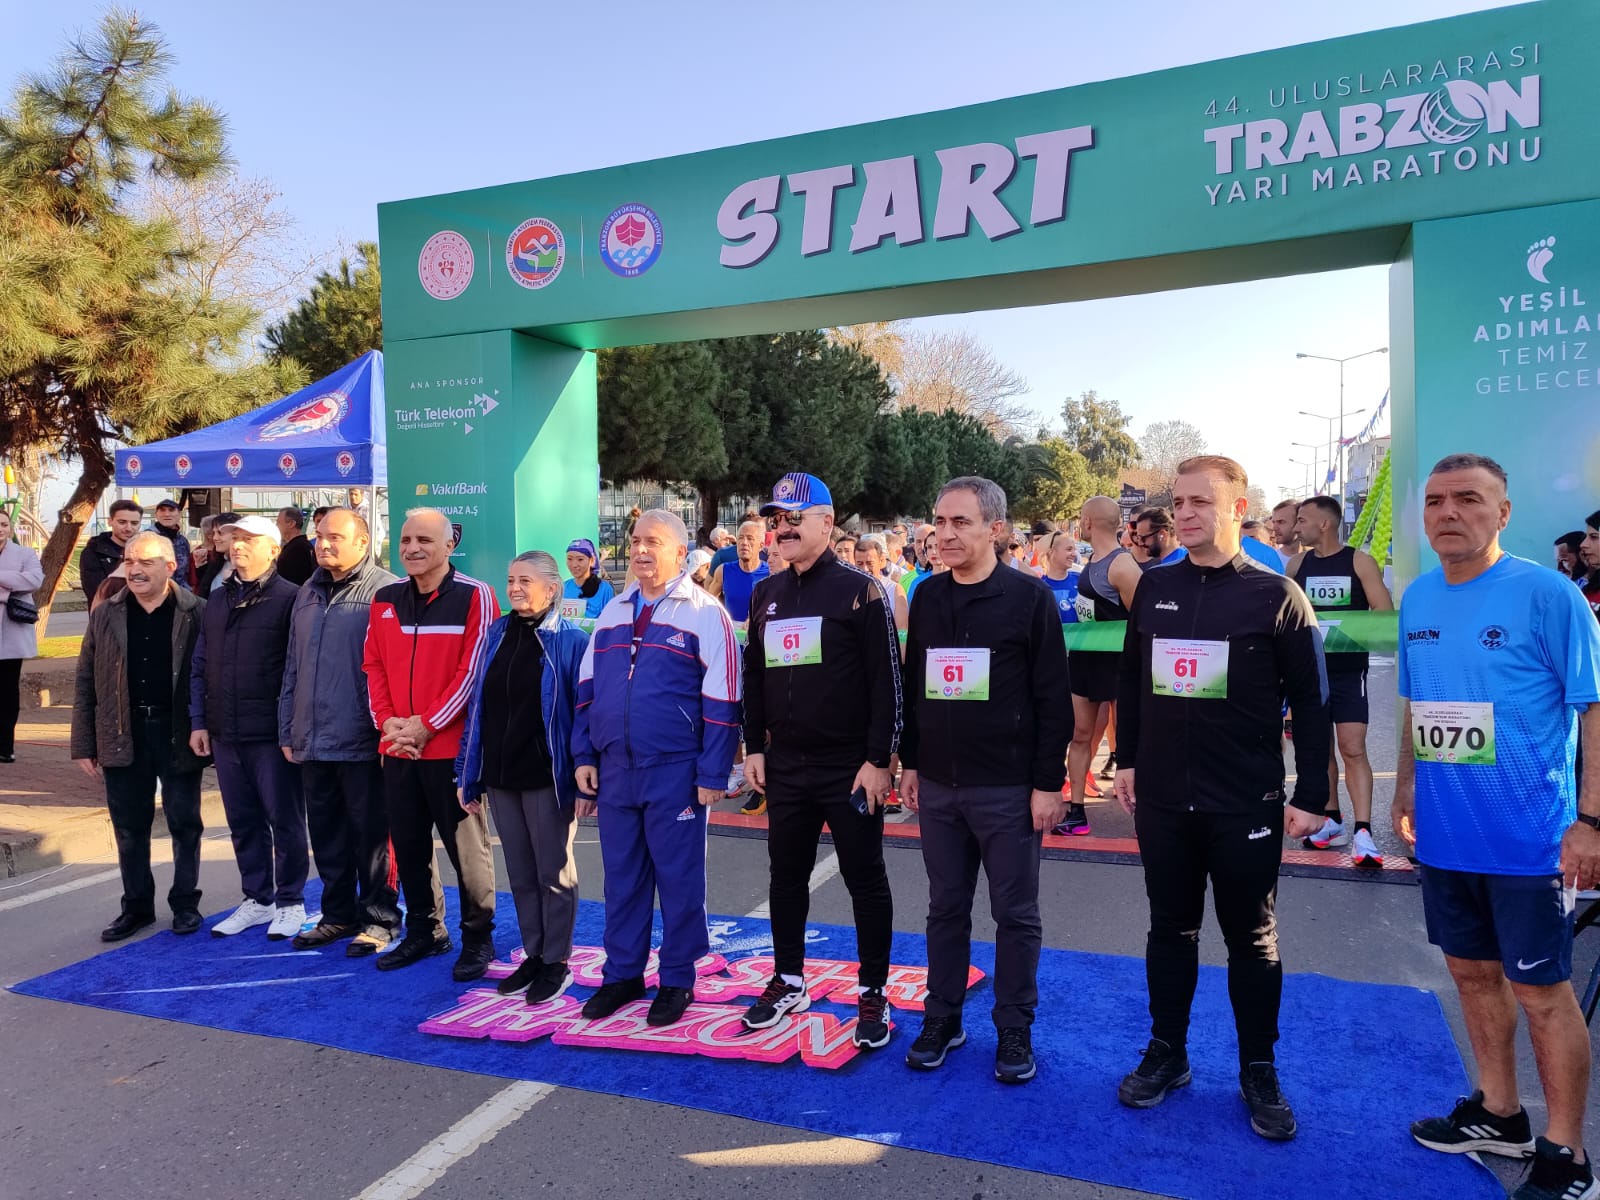 Trabzon Yarı Maratonu, “Yeşil Adımlar, Temiz Gelecek” sloganıyla koşuldu